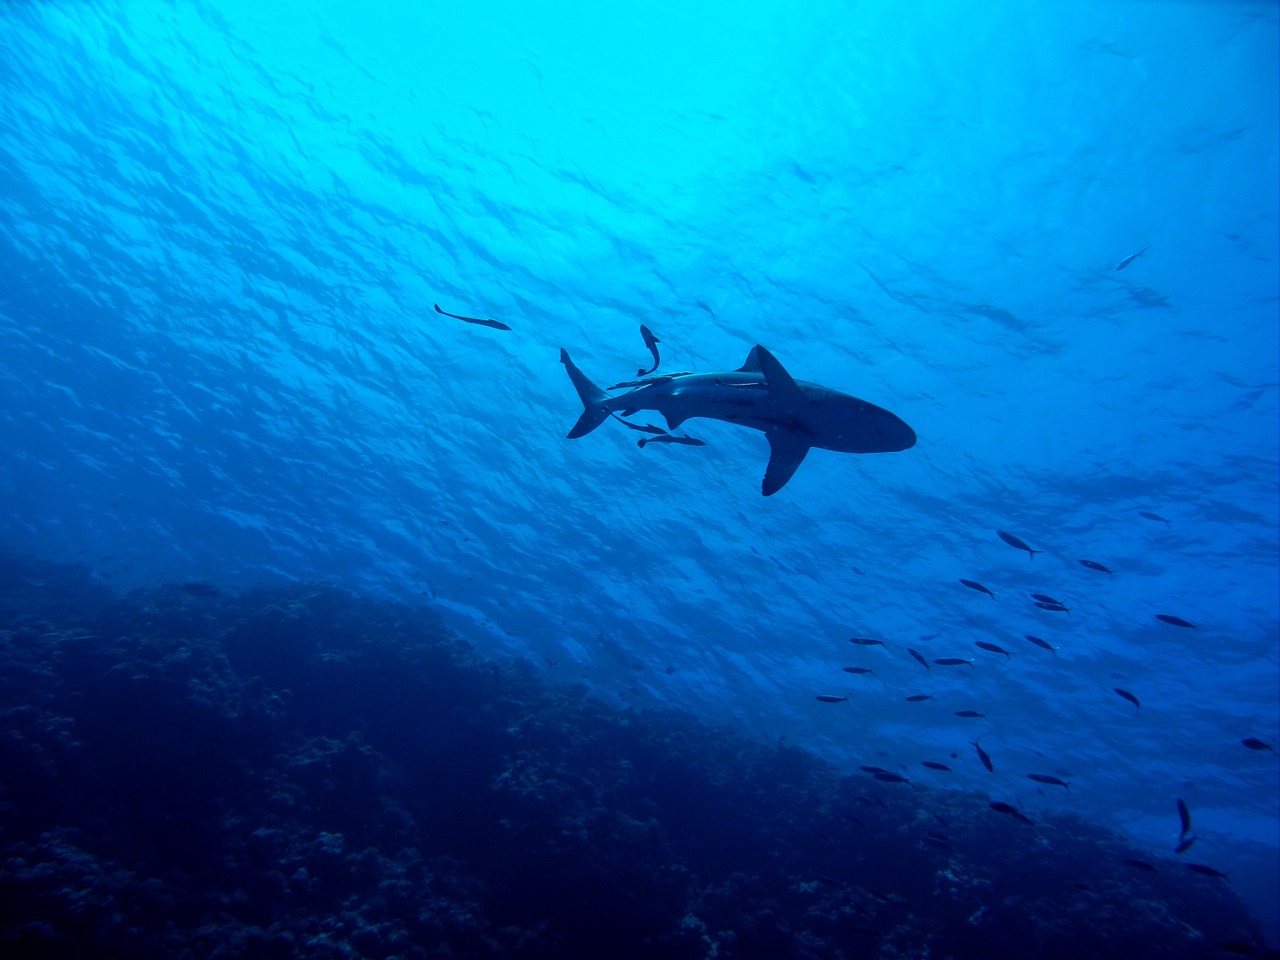 Αυστραλία: Επίθεση καρχαρία σε 29χρονη στο λιμάνι του Σίδνεϊ - Η σωτήρια επέμβαση κτηνιάτρου